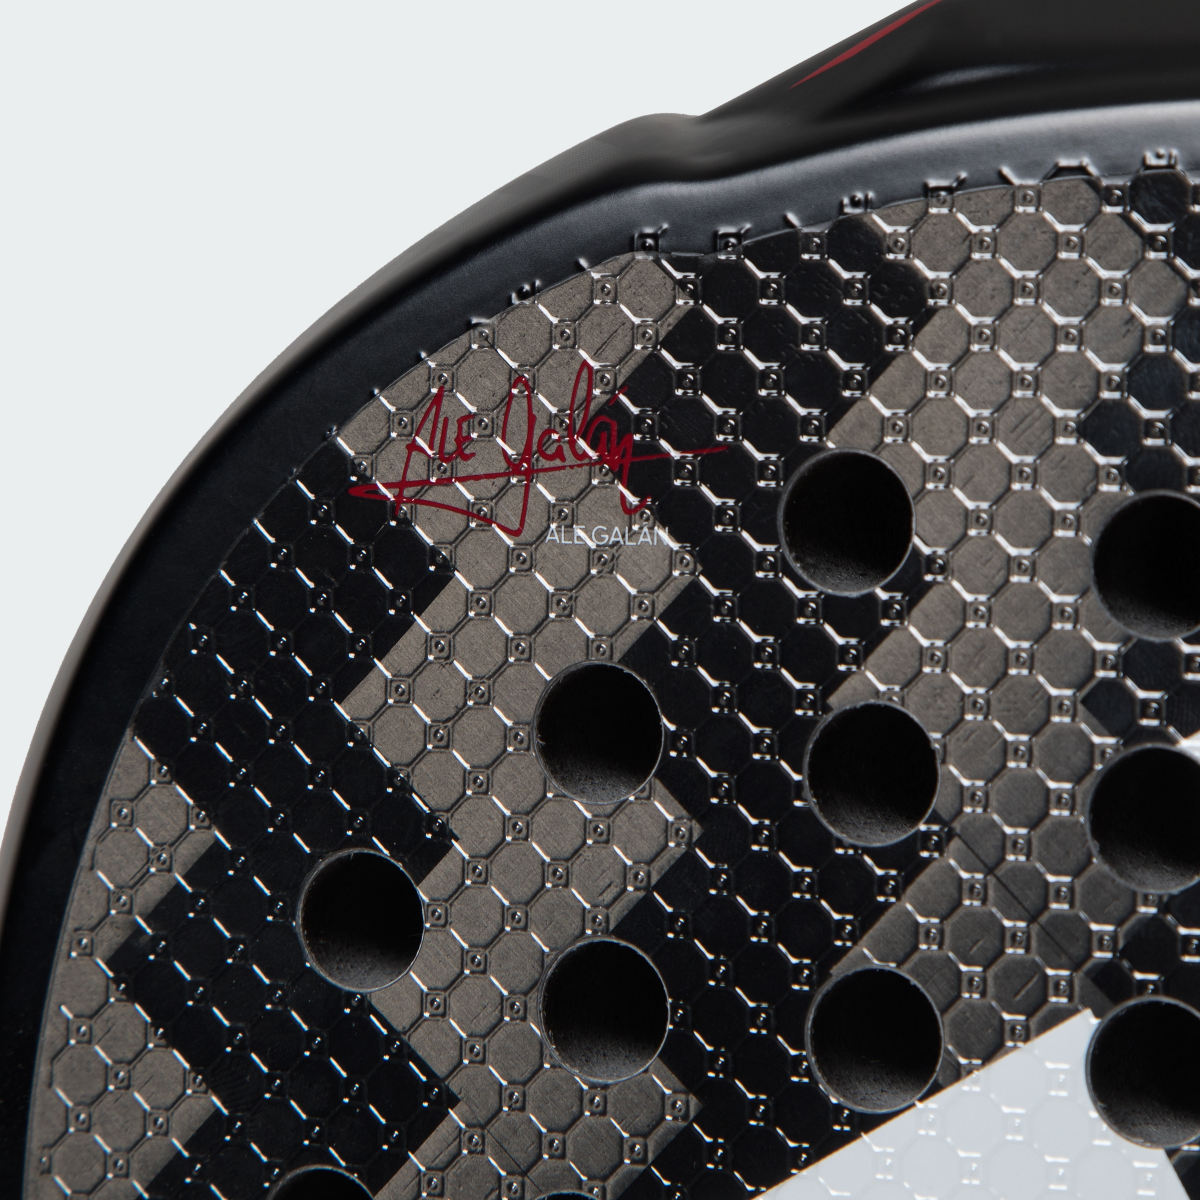 Adidas Raquete de Padel Metalbone 3.3. 6